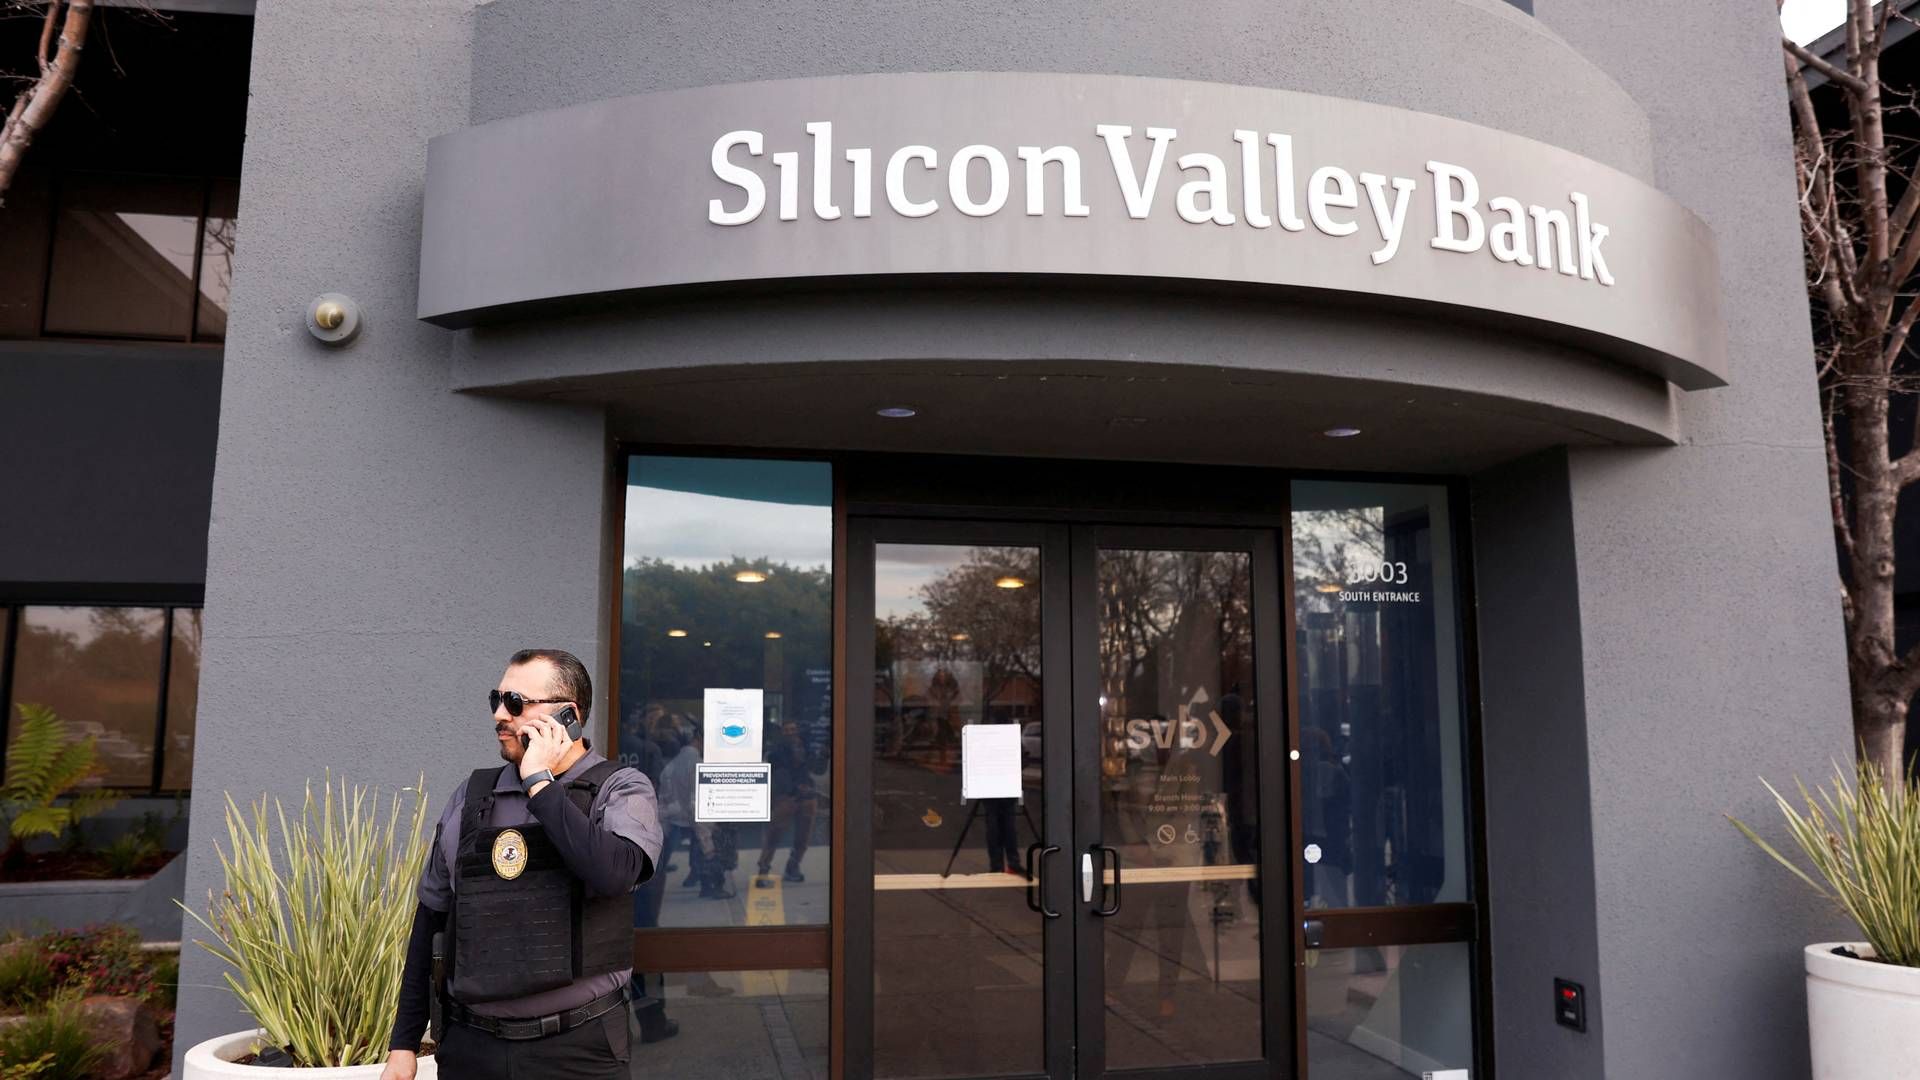 Silicon Valley Bank kollapsede tidligere på måneden og er blevet overtaget af First Citizens Bank.